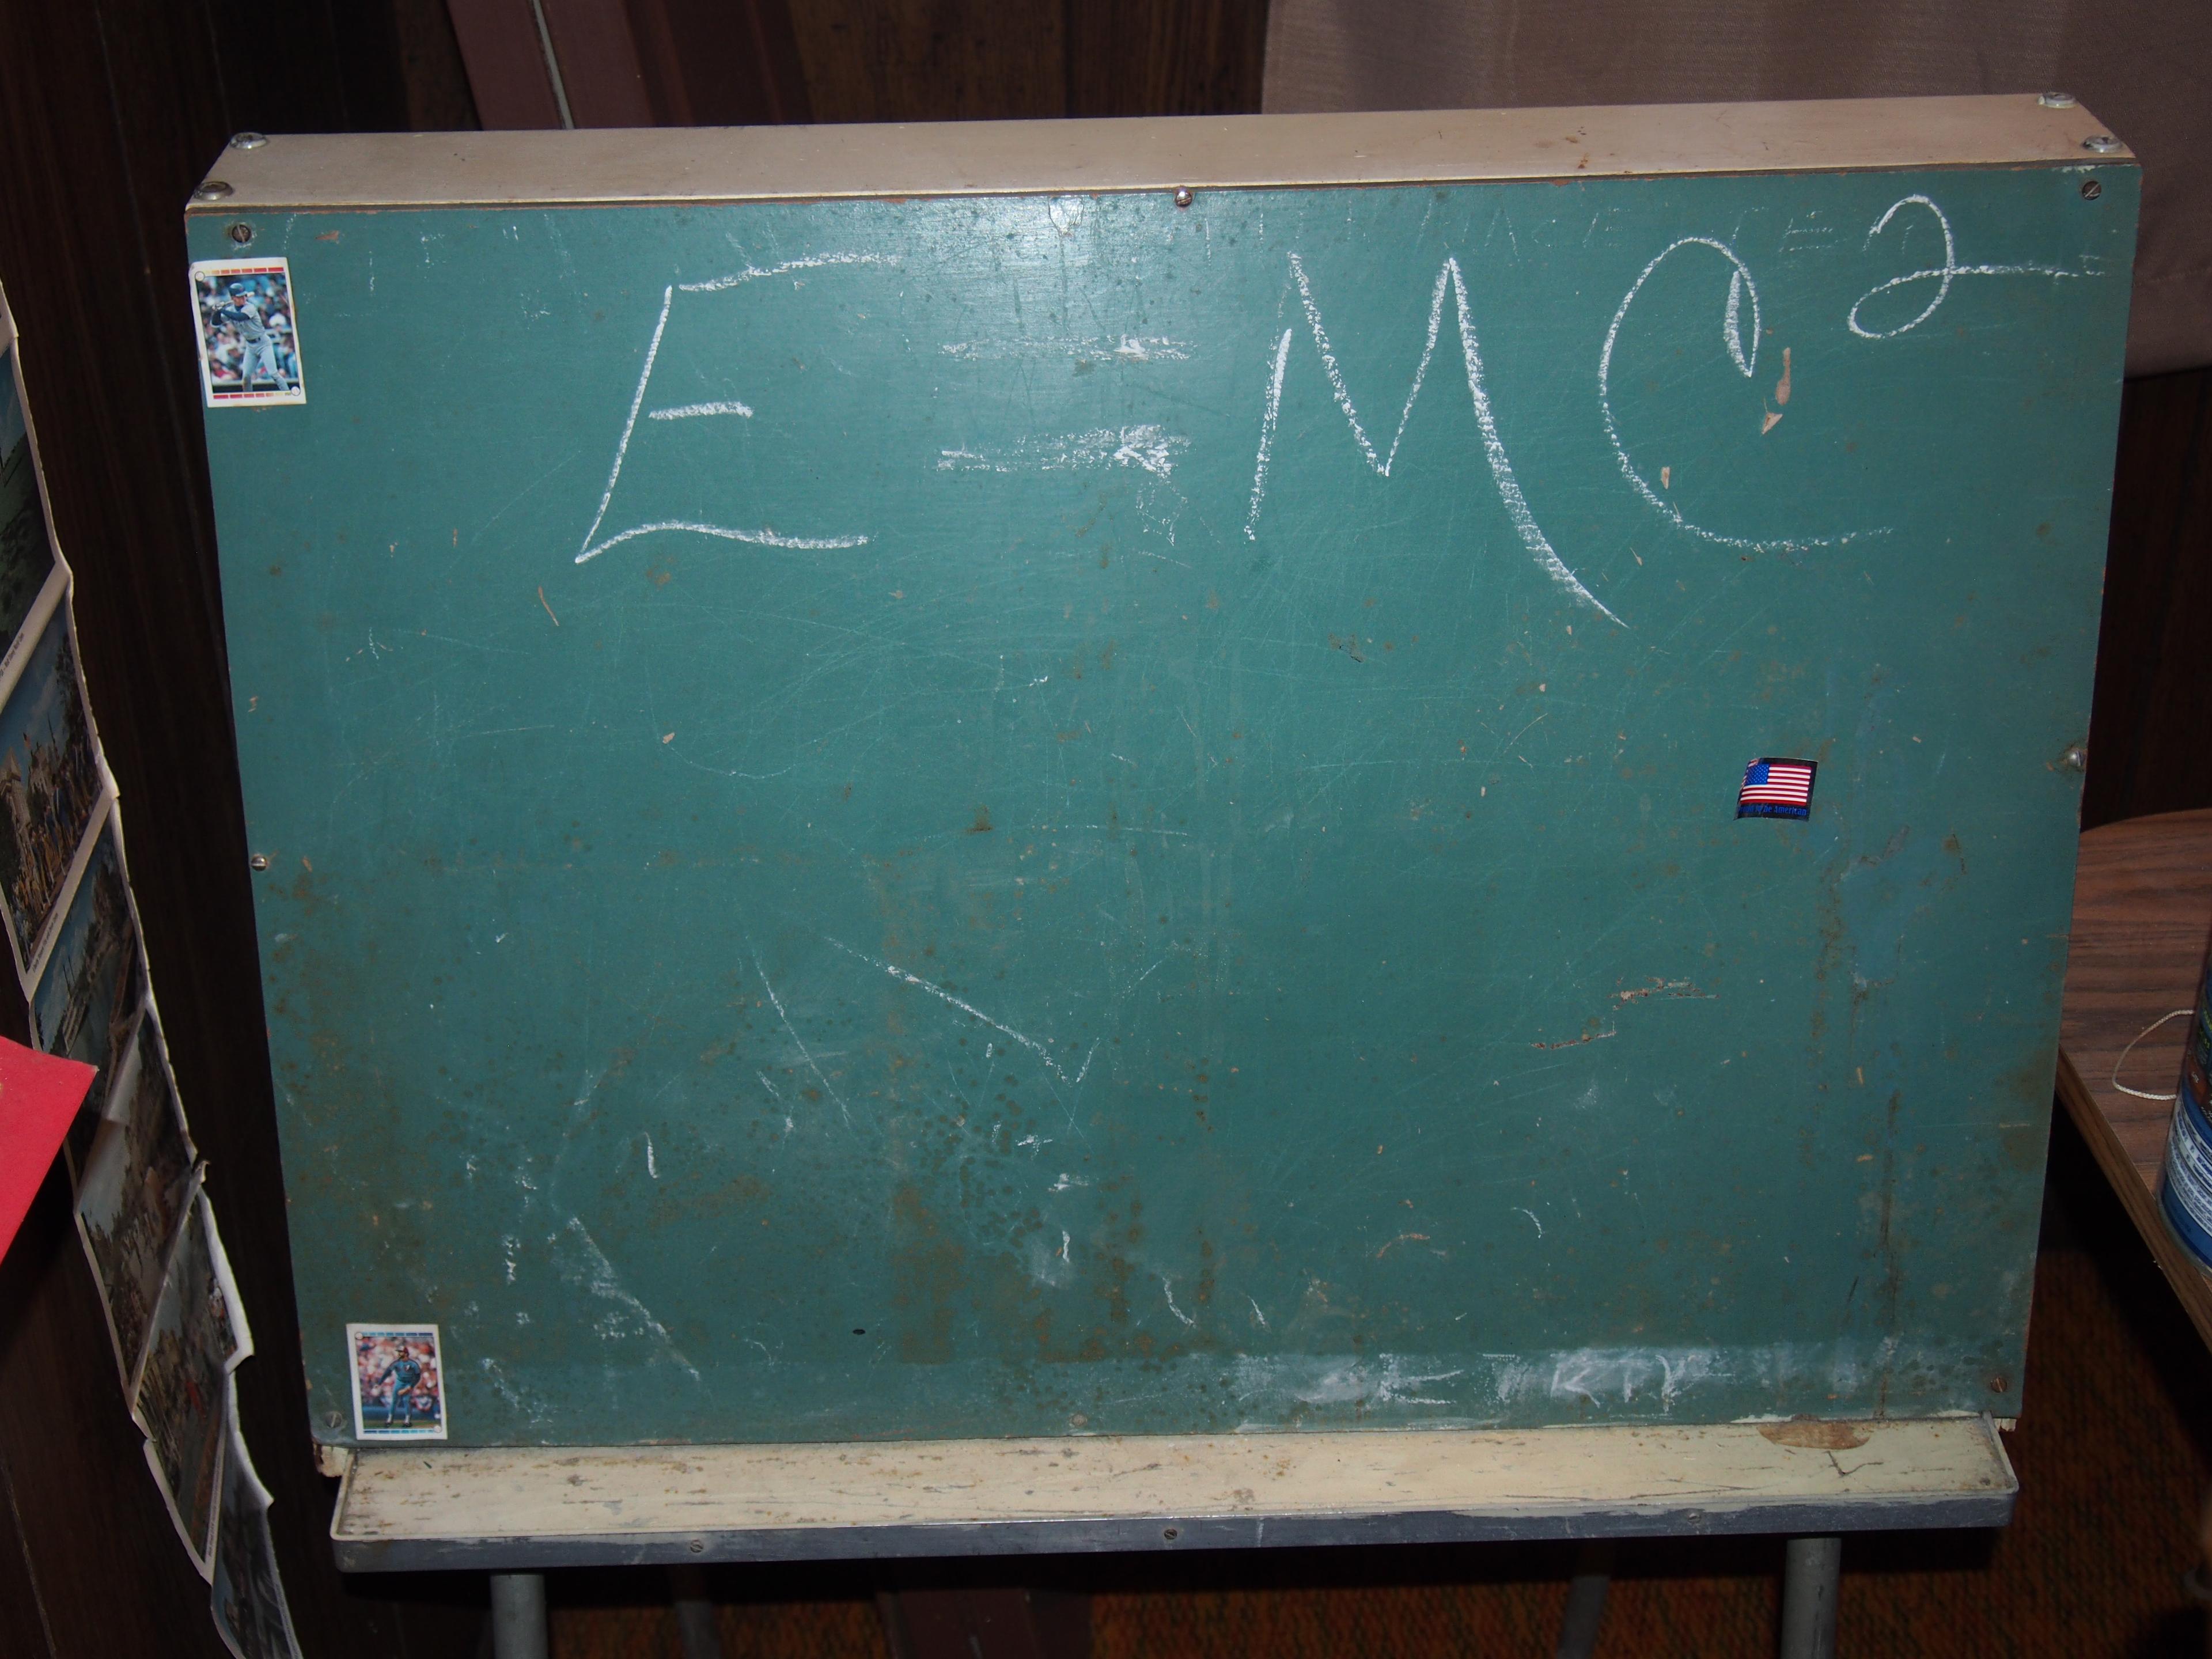 Children's chalkboard and storage